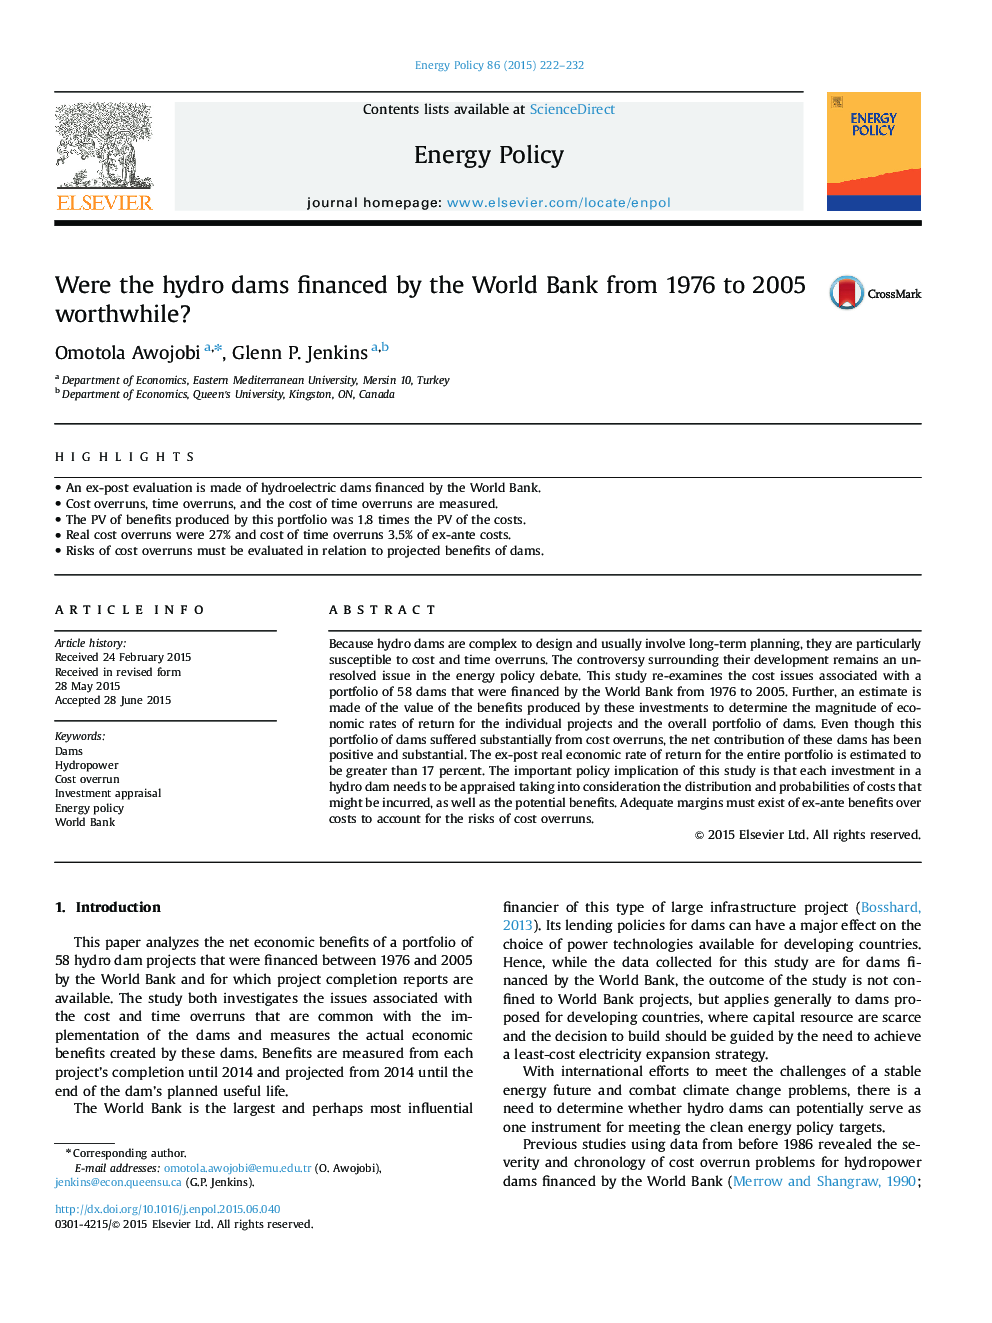 آیا سد های هیدرولیکی توسط بانک جهانی از سال 1976 تا 2005 مورد ارزشمندی بود؟ 